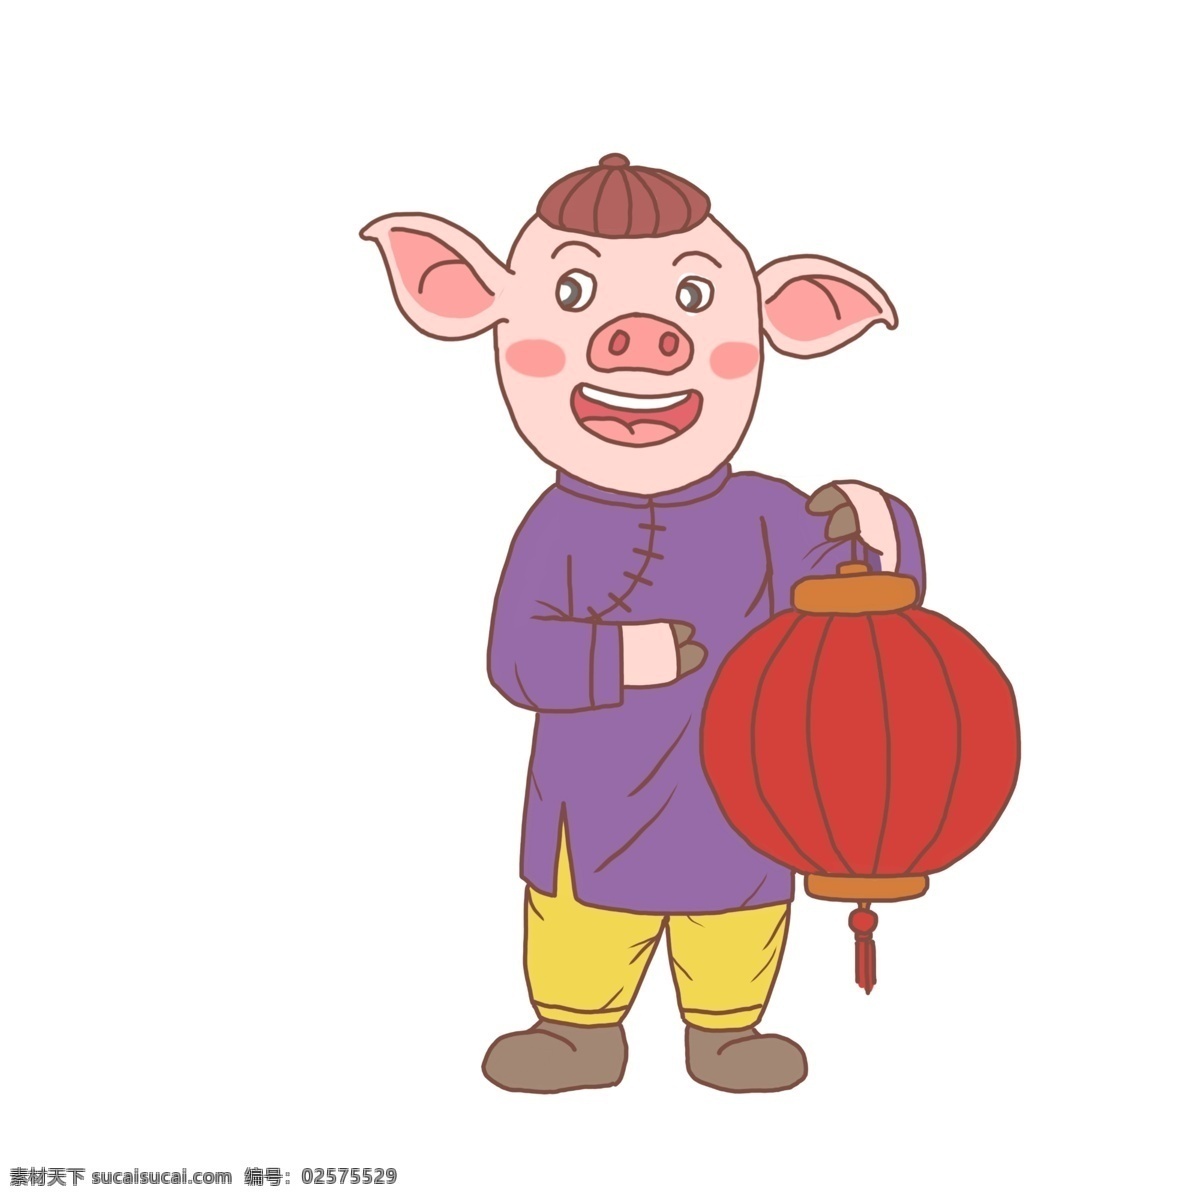 猪年 卡通 手绘 猪 人 灯笼 2019年 小猪 卡通猪